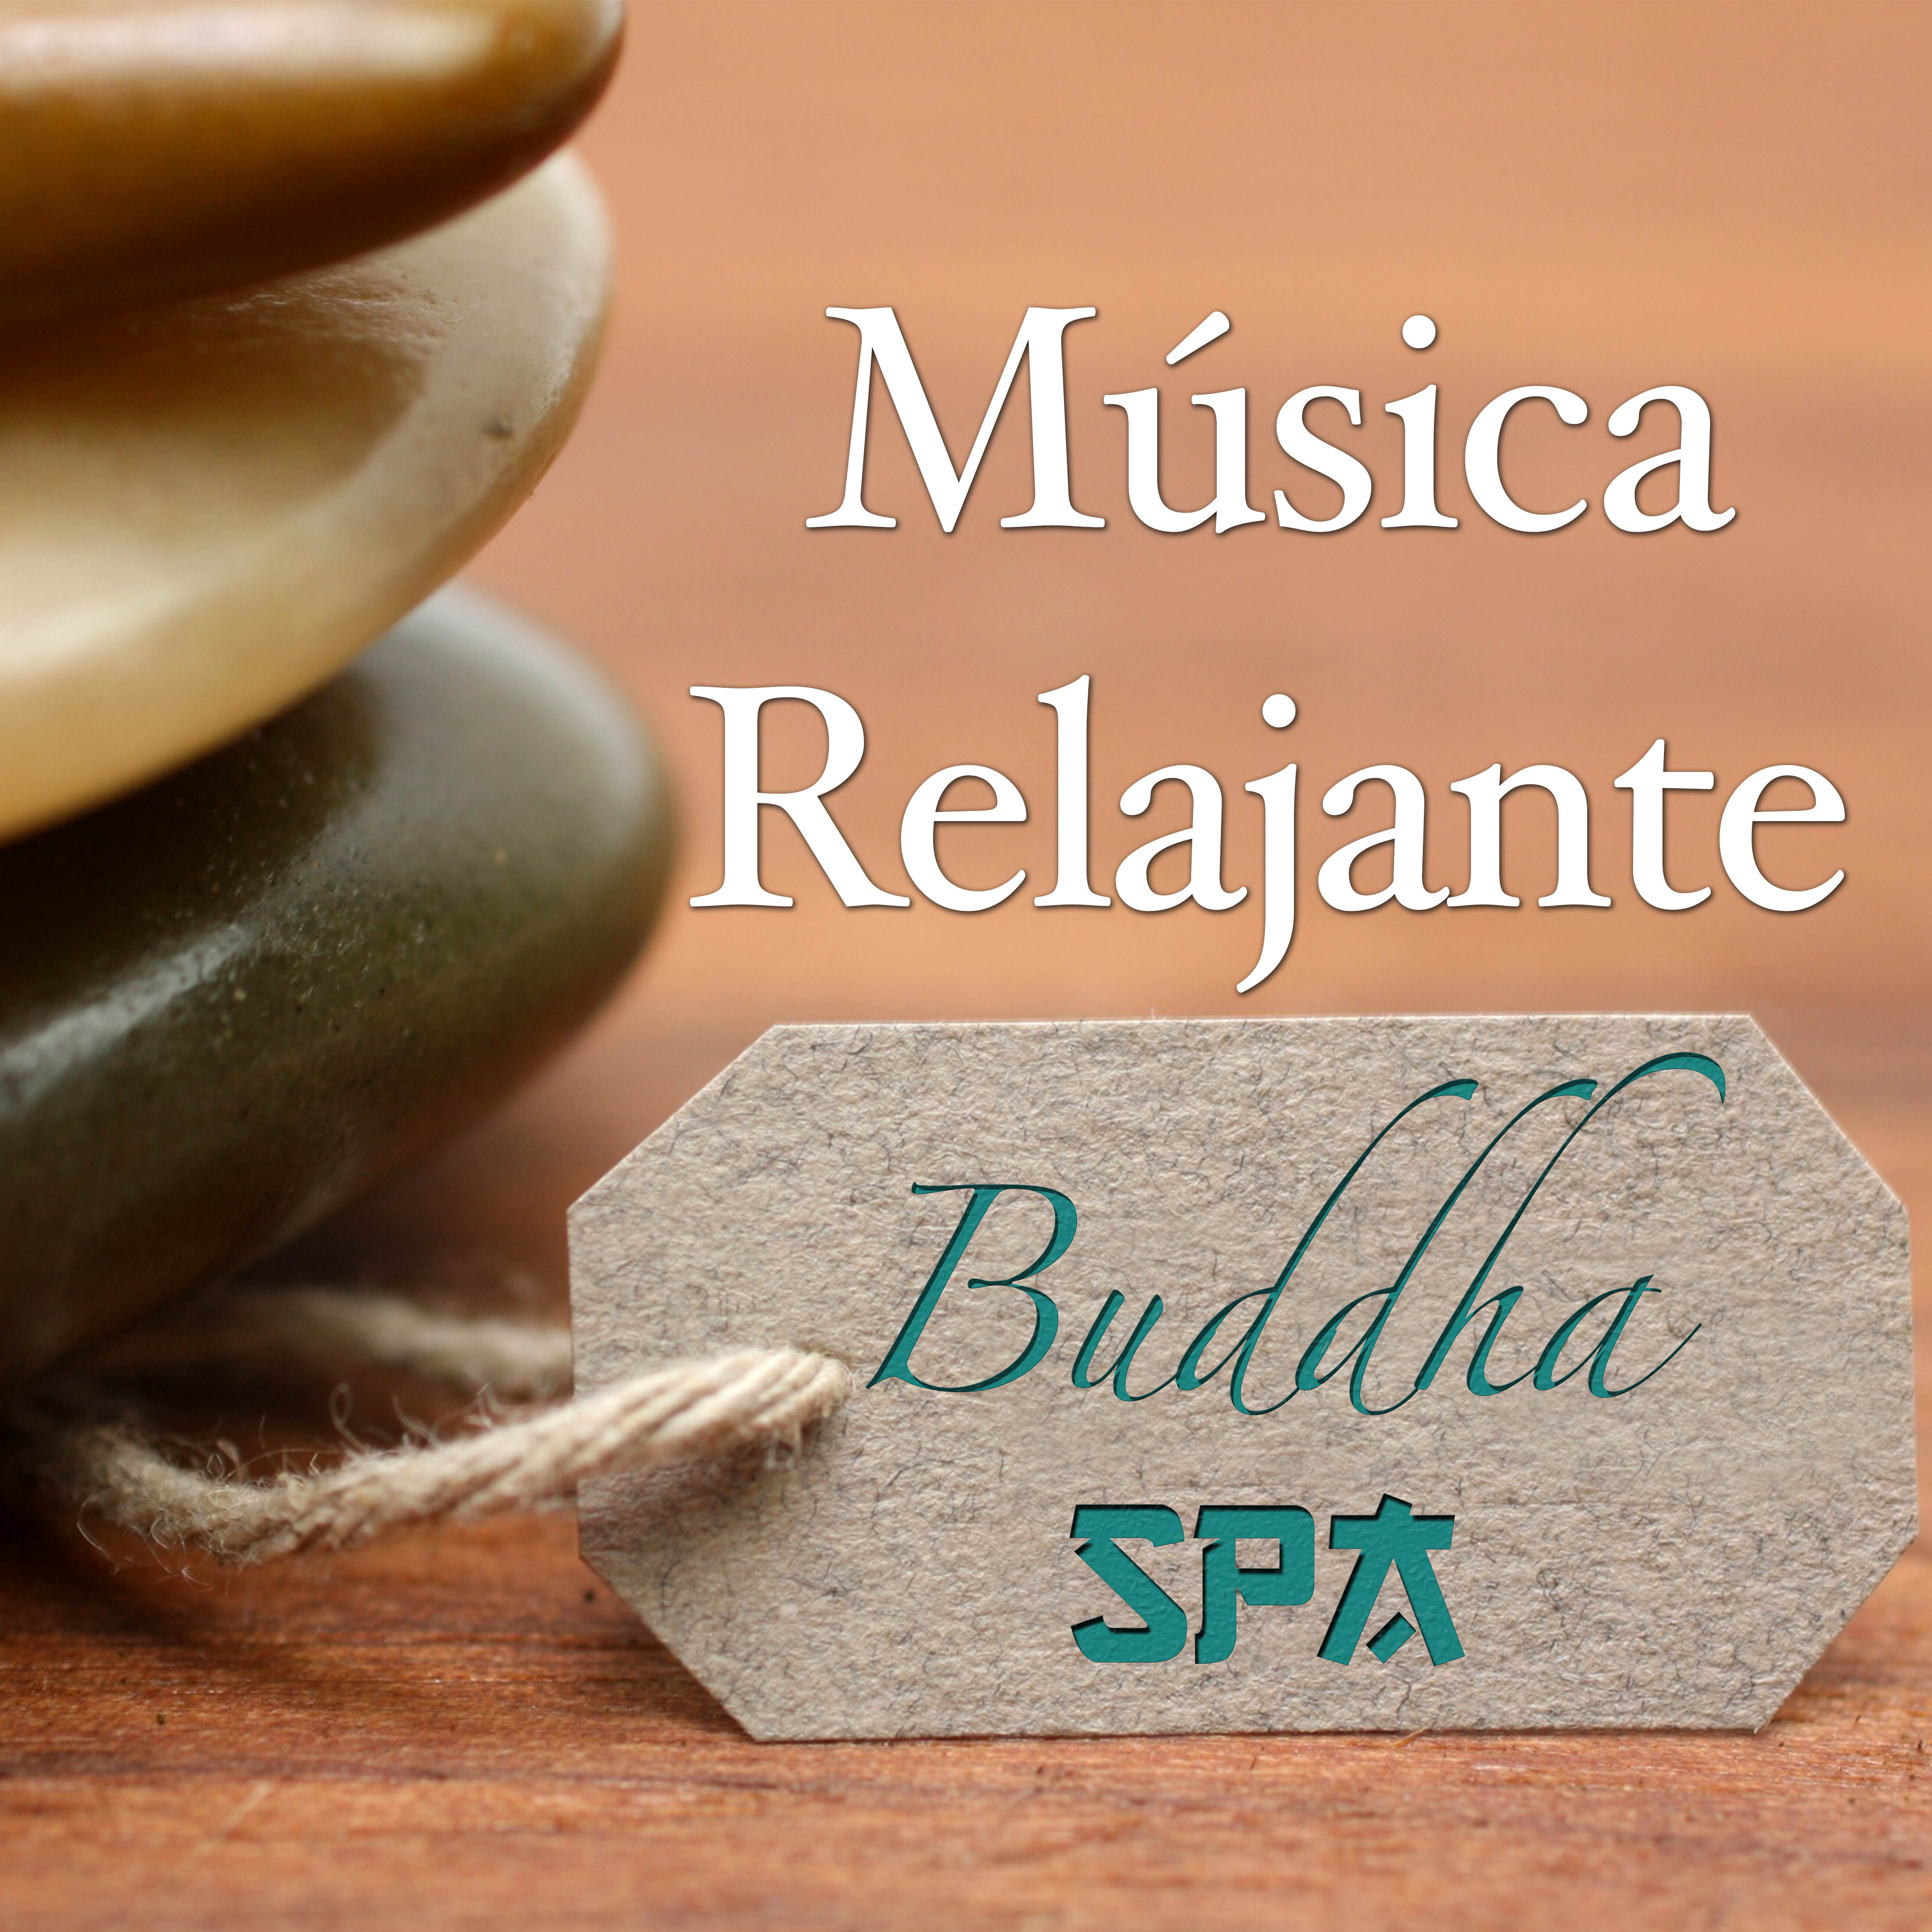 Spa Buddha: Mu sica Relajante para una Terapia de Relajacio n de Spa y Salon de Belleza para Tu Paz Interior